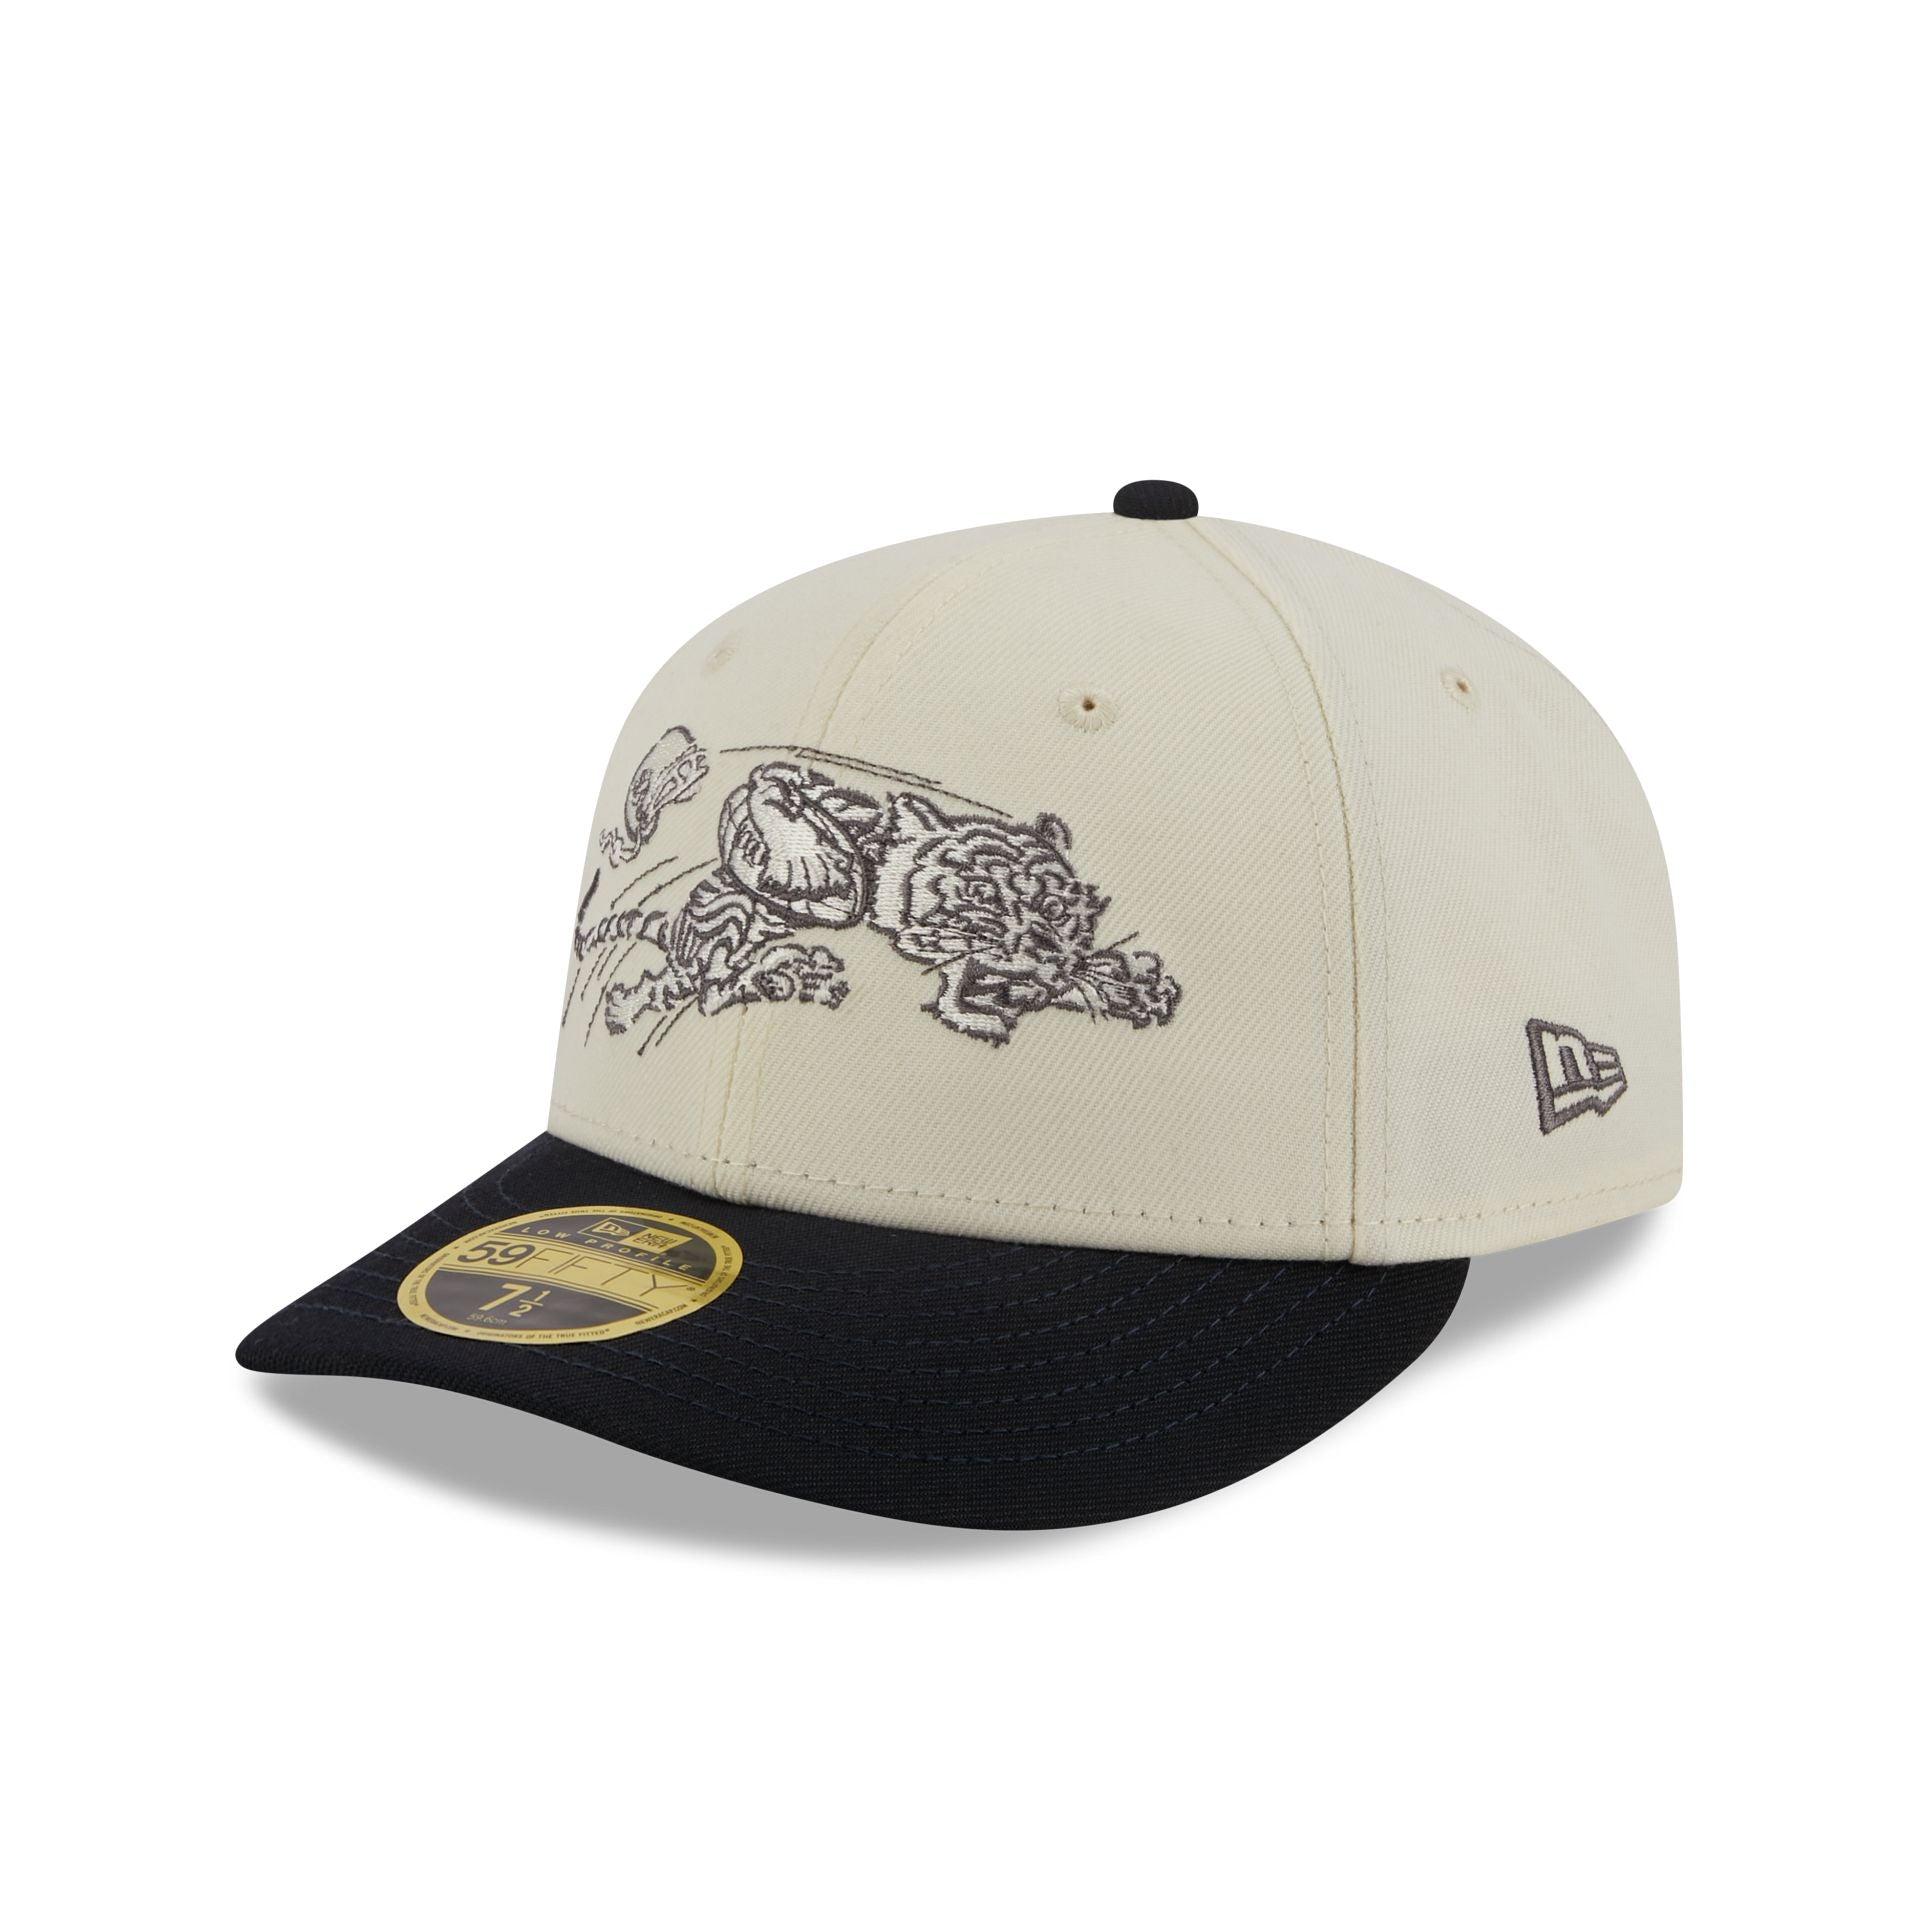 New & Caps Cincinnati Cap – Era Hats Bengals